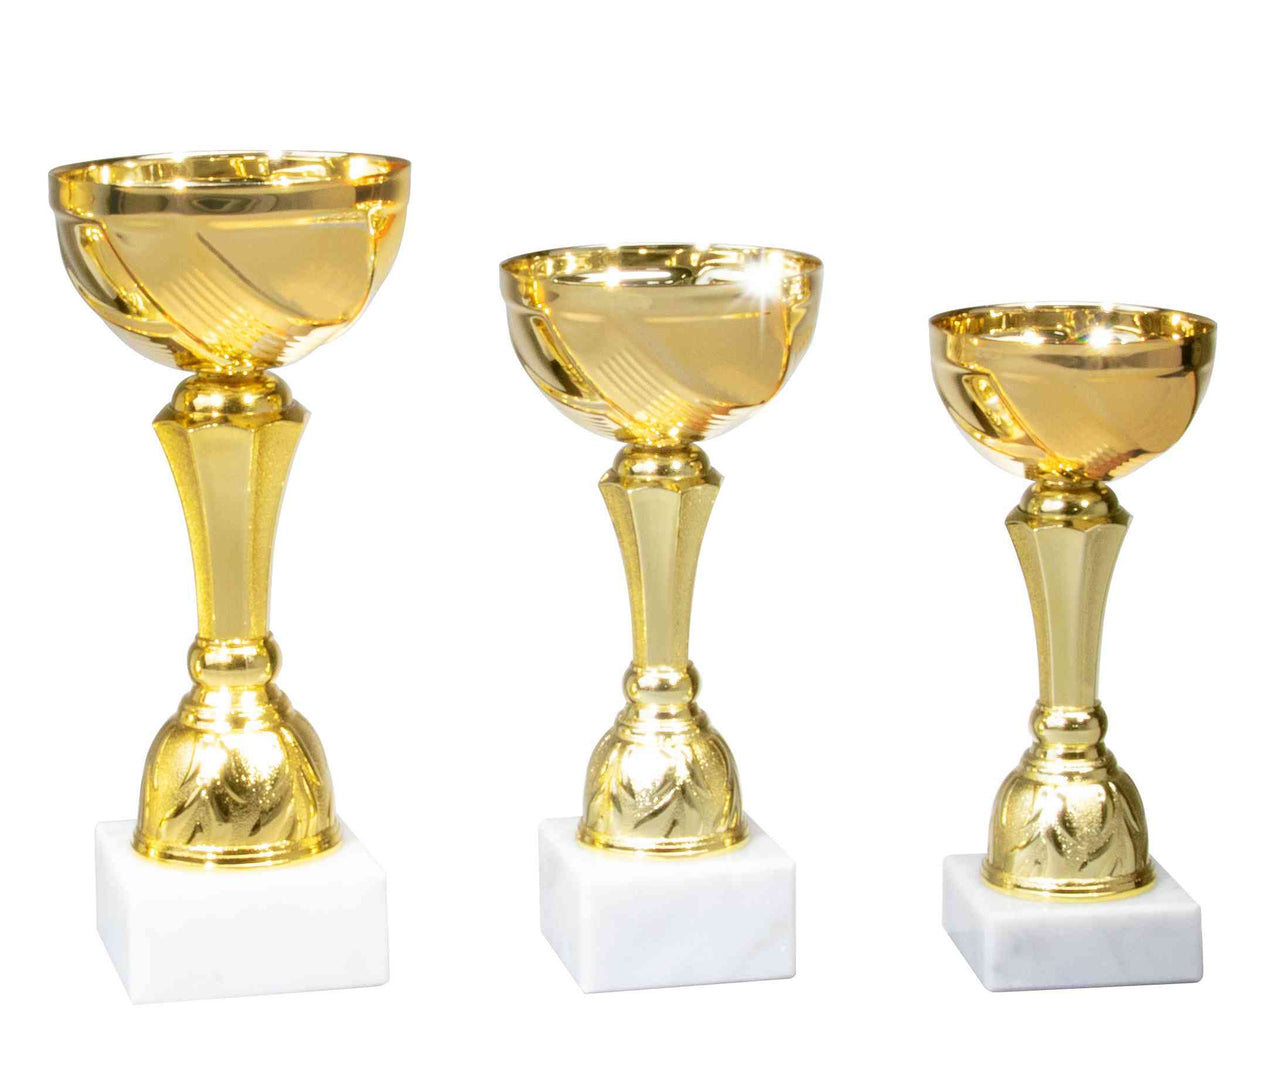 Drei goldene Pokale unterschiedlicher Höhe auf weißen Sockeln vor einem weißen Hintergrund.
Produktname: Pokale Minden 3-er Pokalserie 157 mm - 200 mm PK740560-3
Markenname: POMEKI